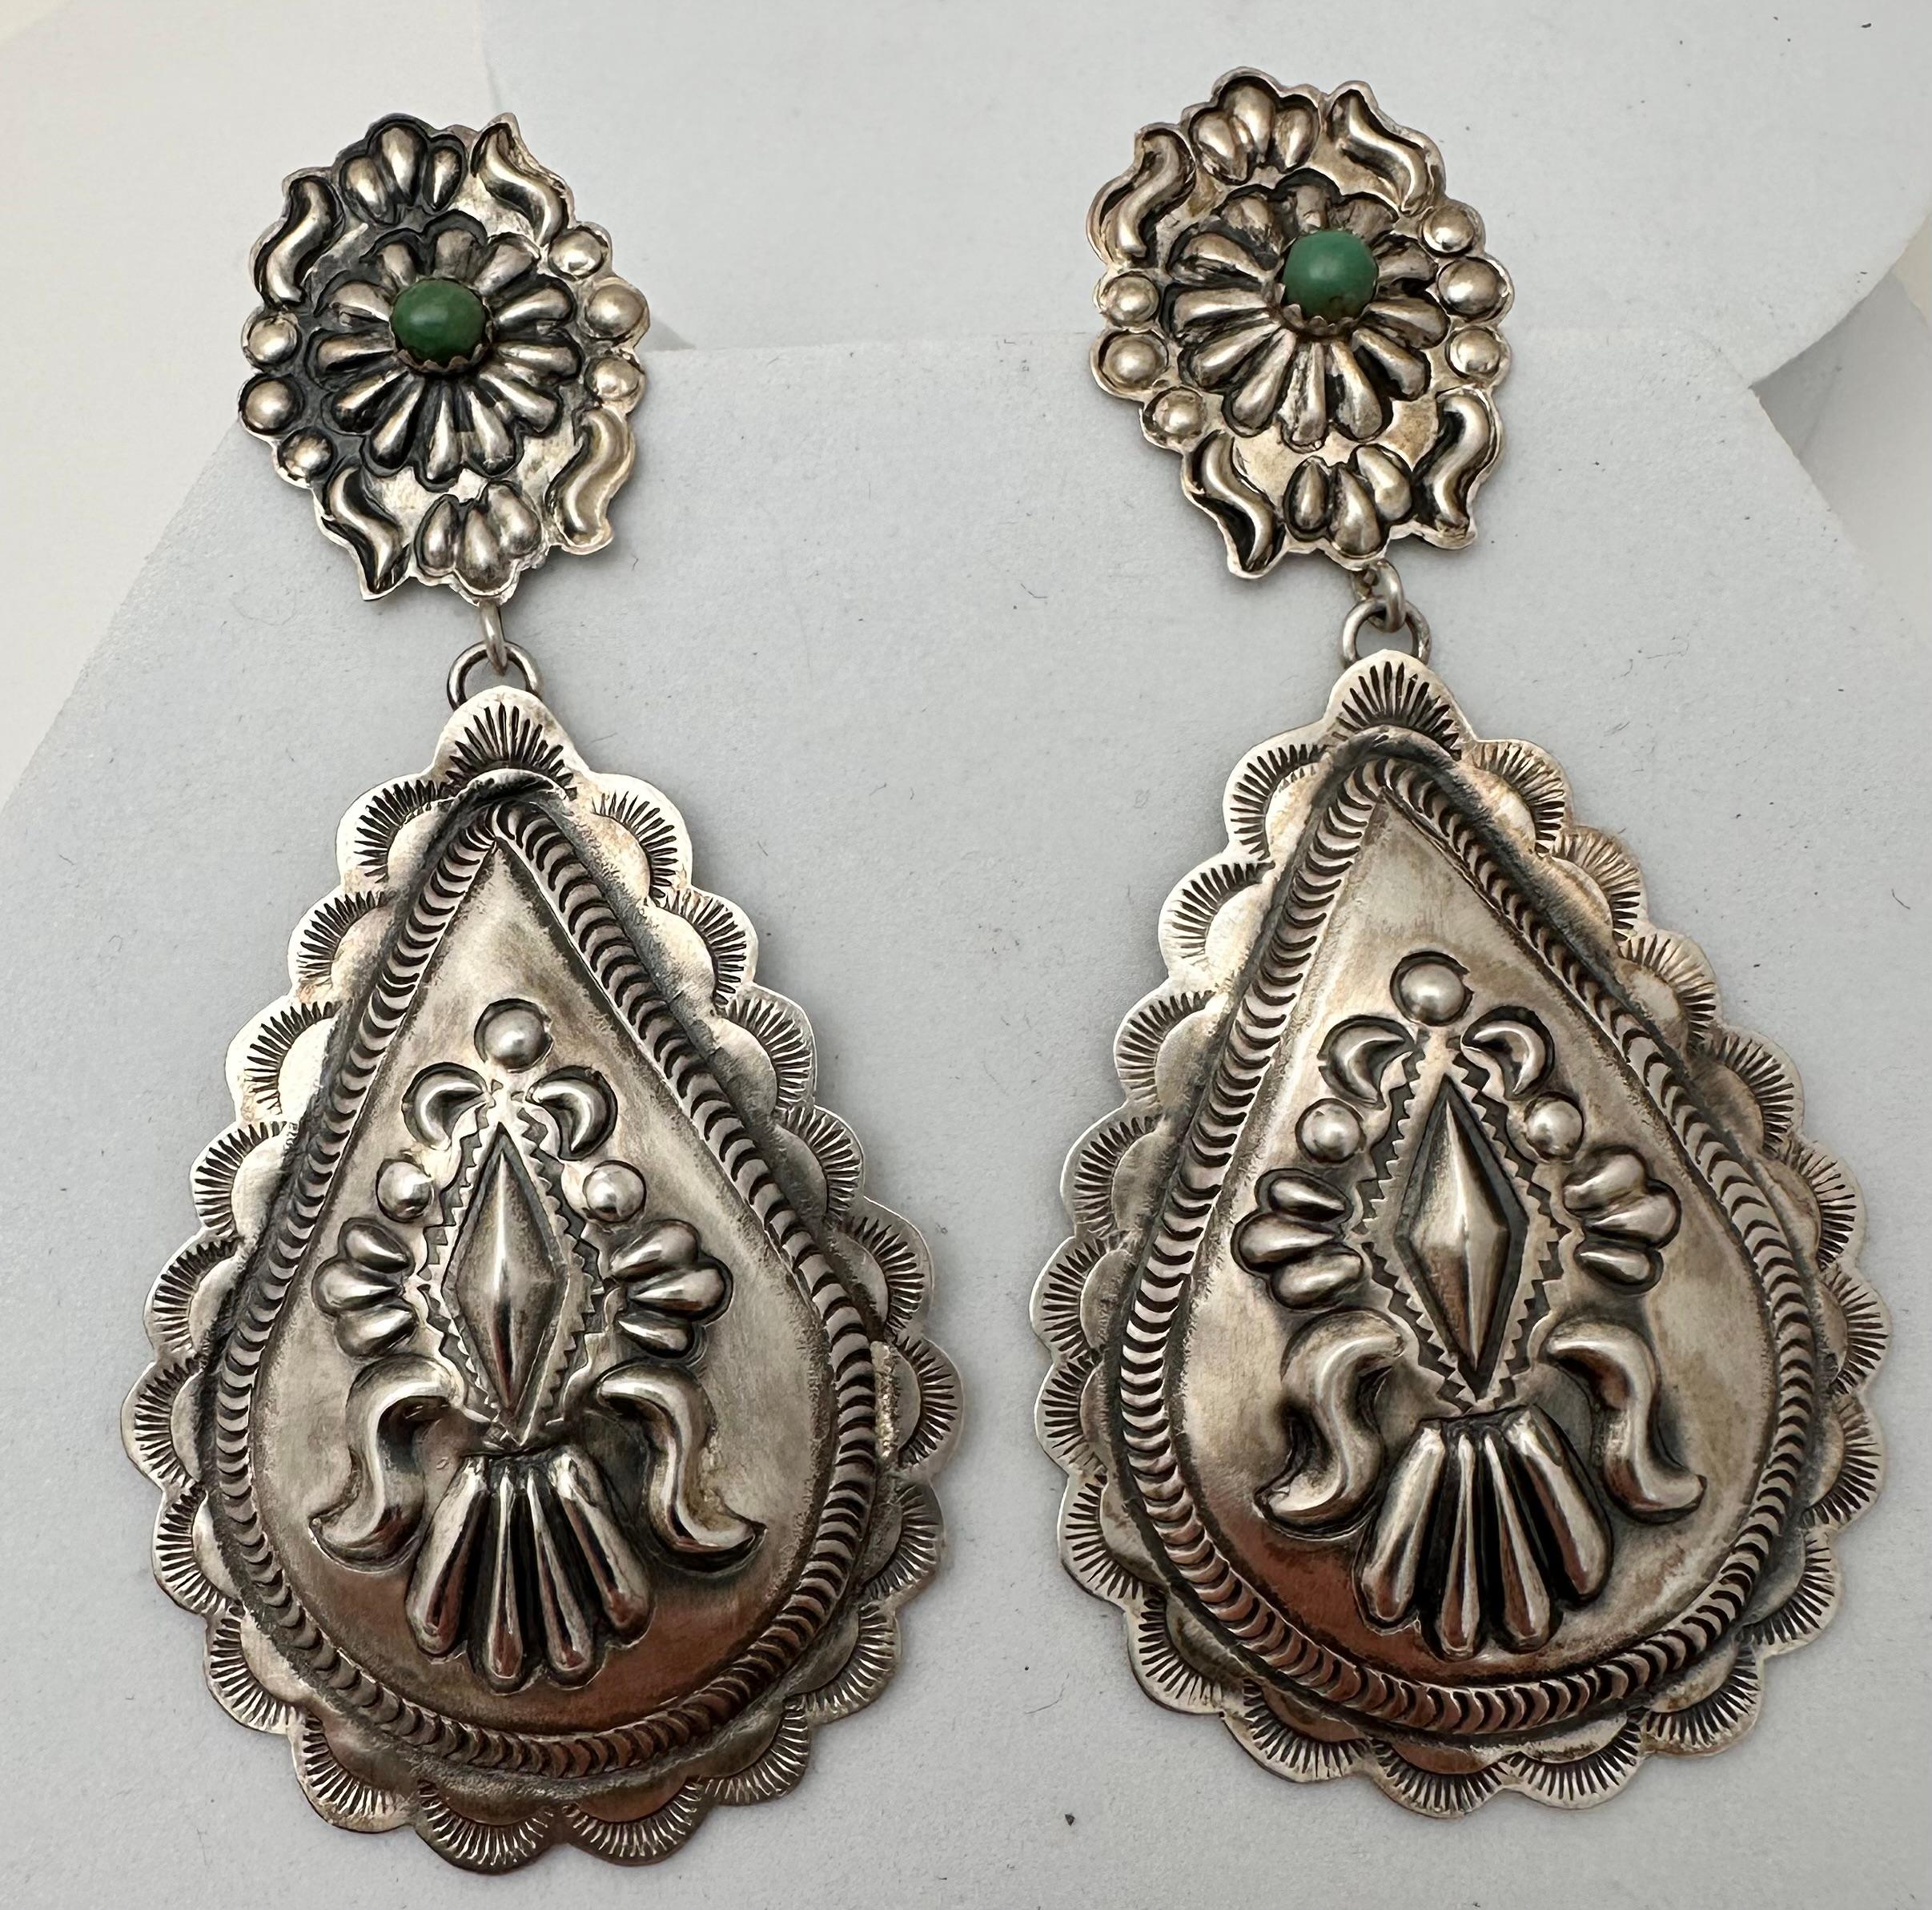 Boucles d'oreilles pendantes en argent Navajo .925 Repousse avec Turquoise verte ronde de 4mm sertie en forme de poire 
Environ 1,5